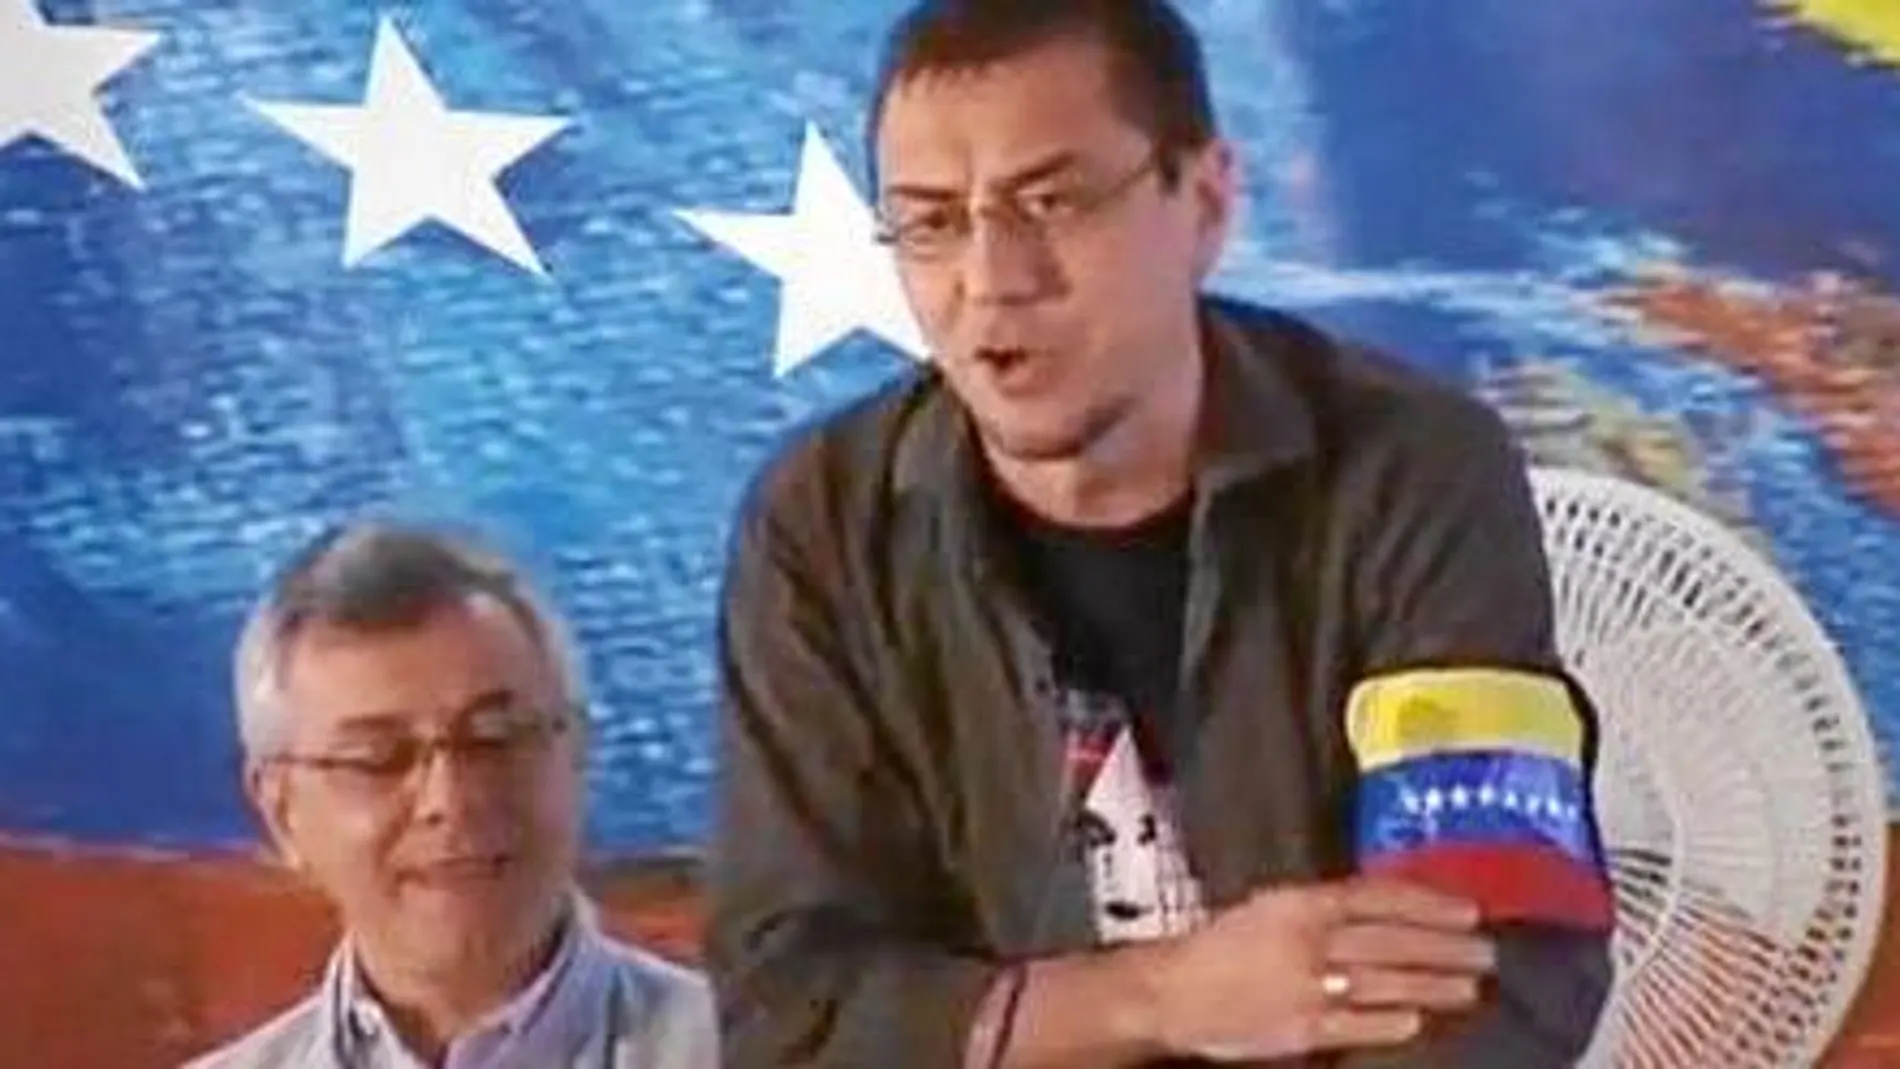 Juan Carlos Monedero siempre ha mostrado sus simpatías por el régimen venezolano. En la foto, días después de la muerte de Chávez, en marzo de 2013, durante una mesa redonda en Caracas